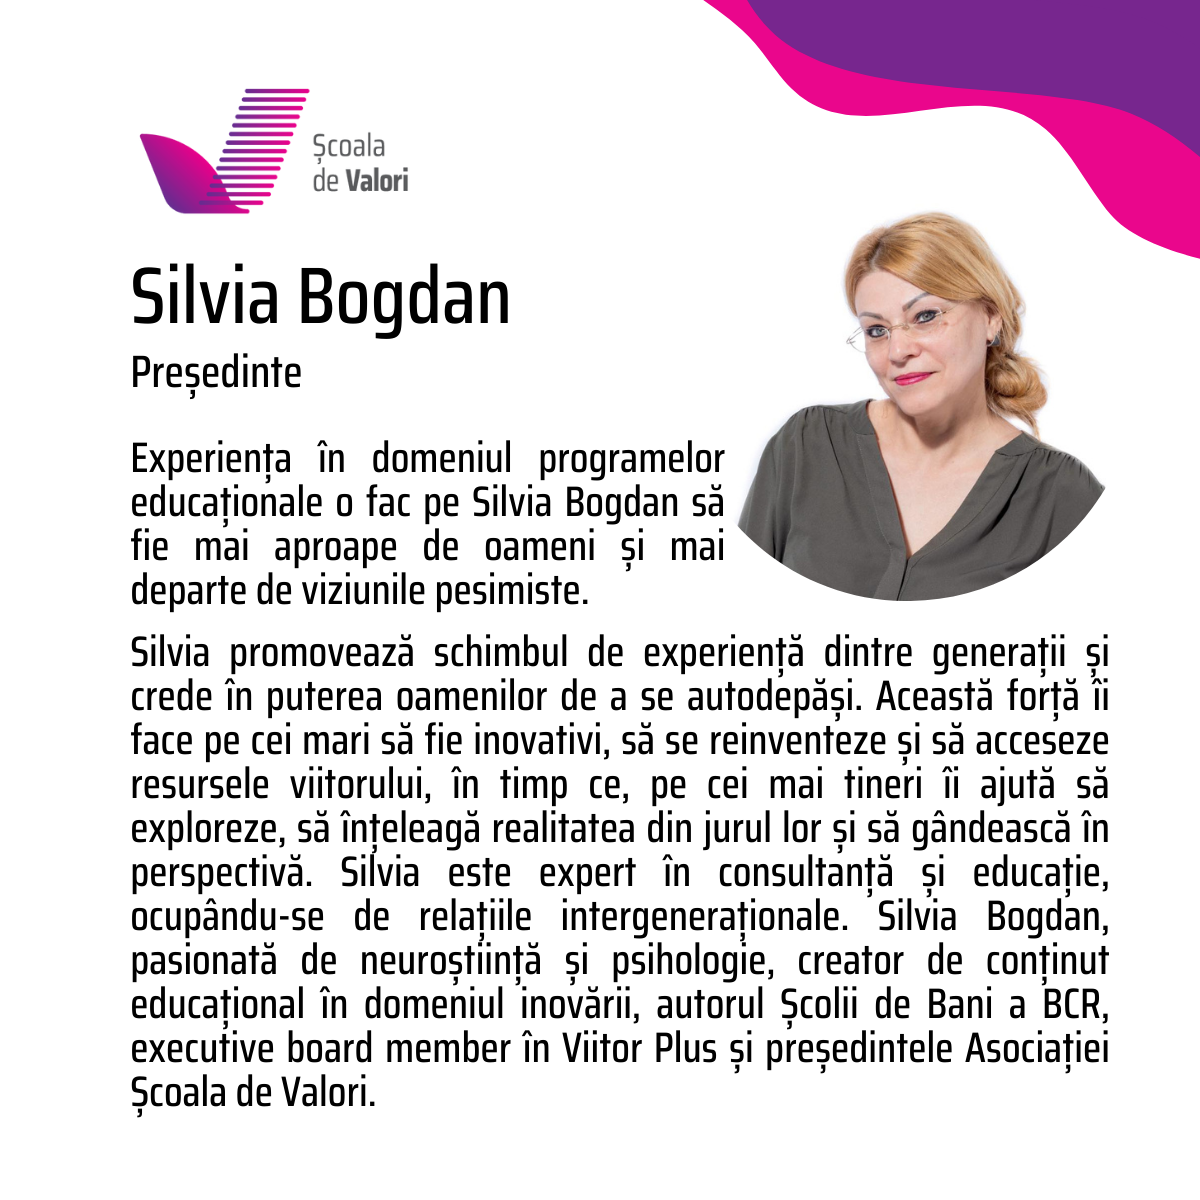 Silvia Bogdan